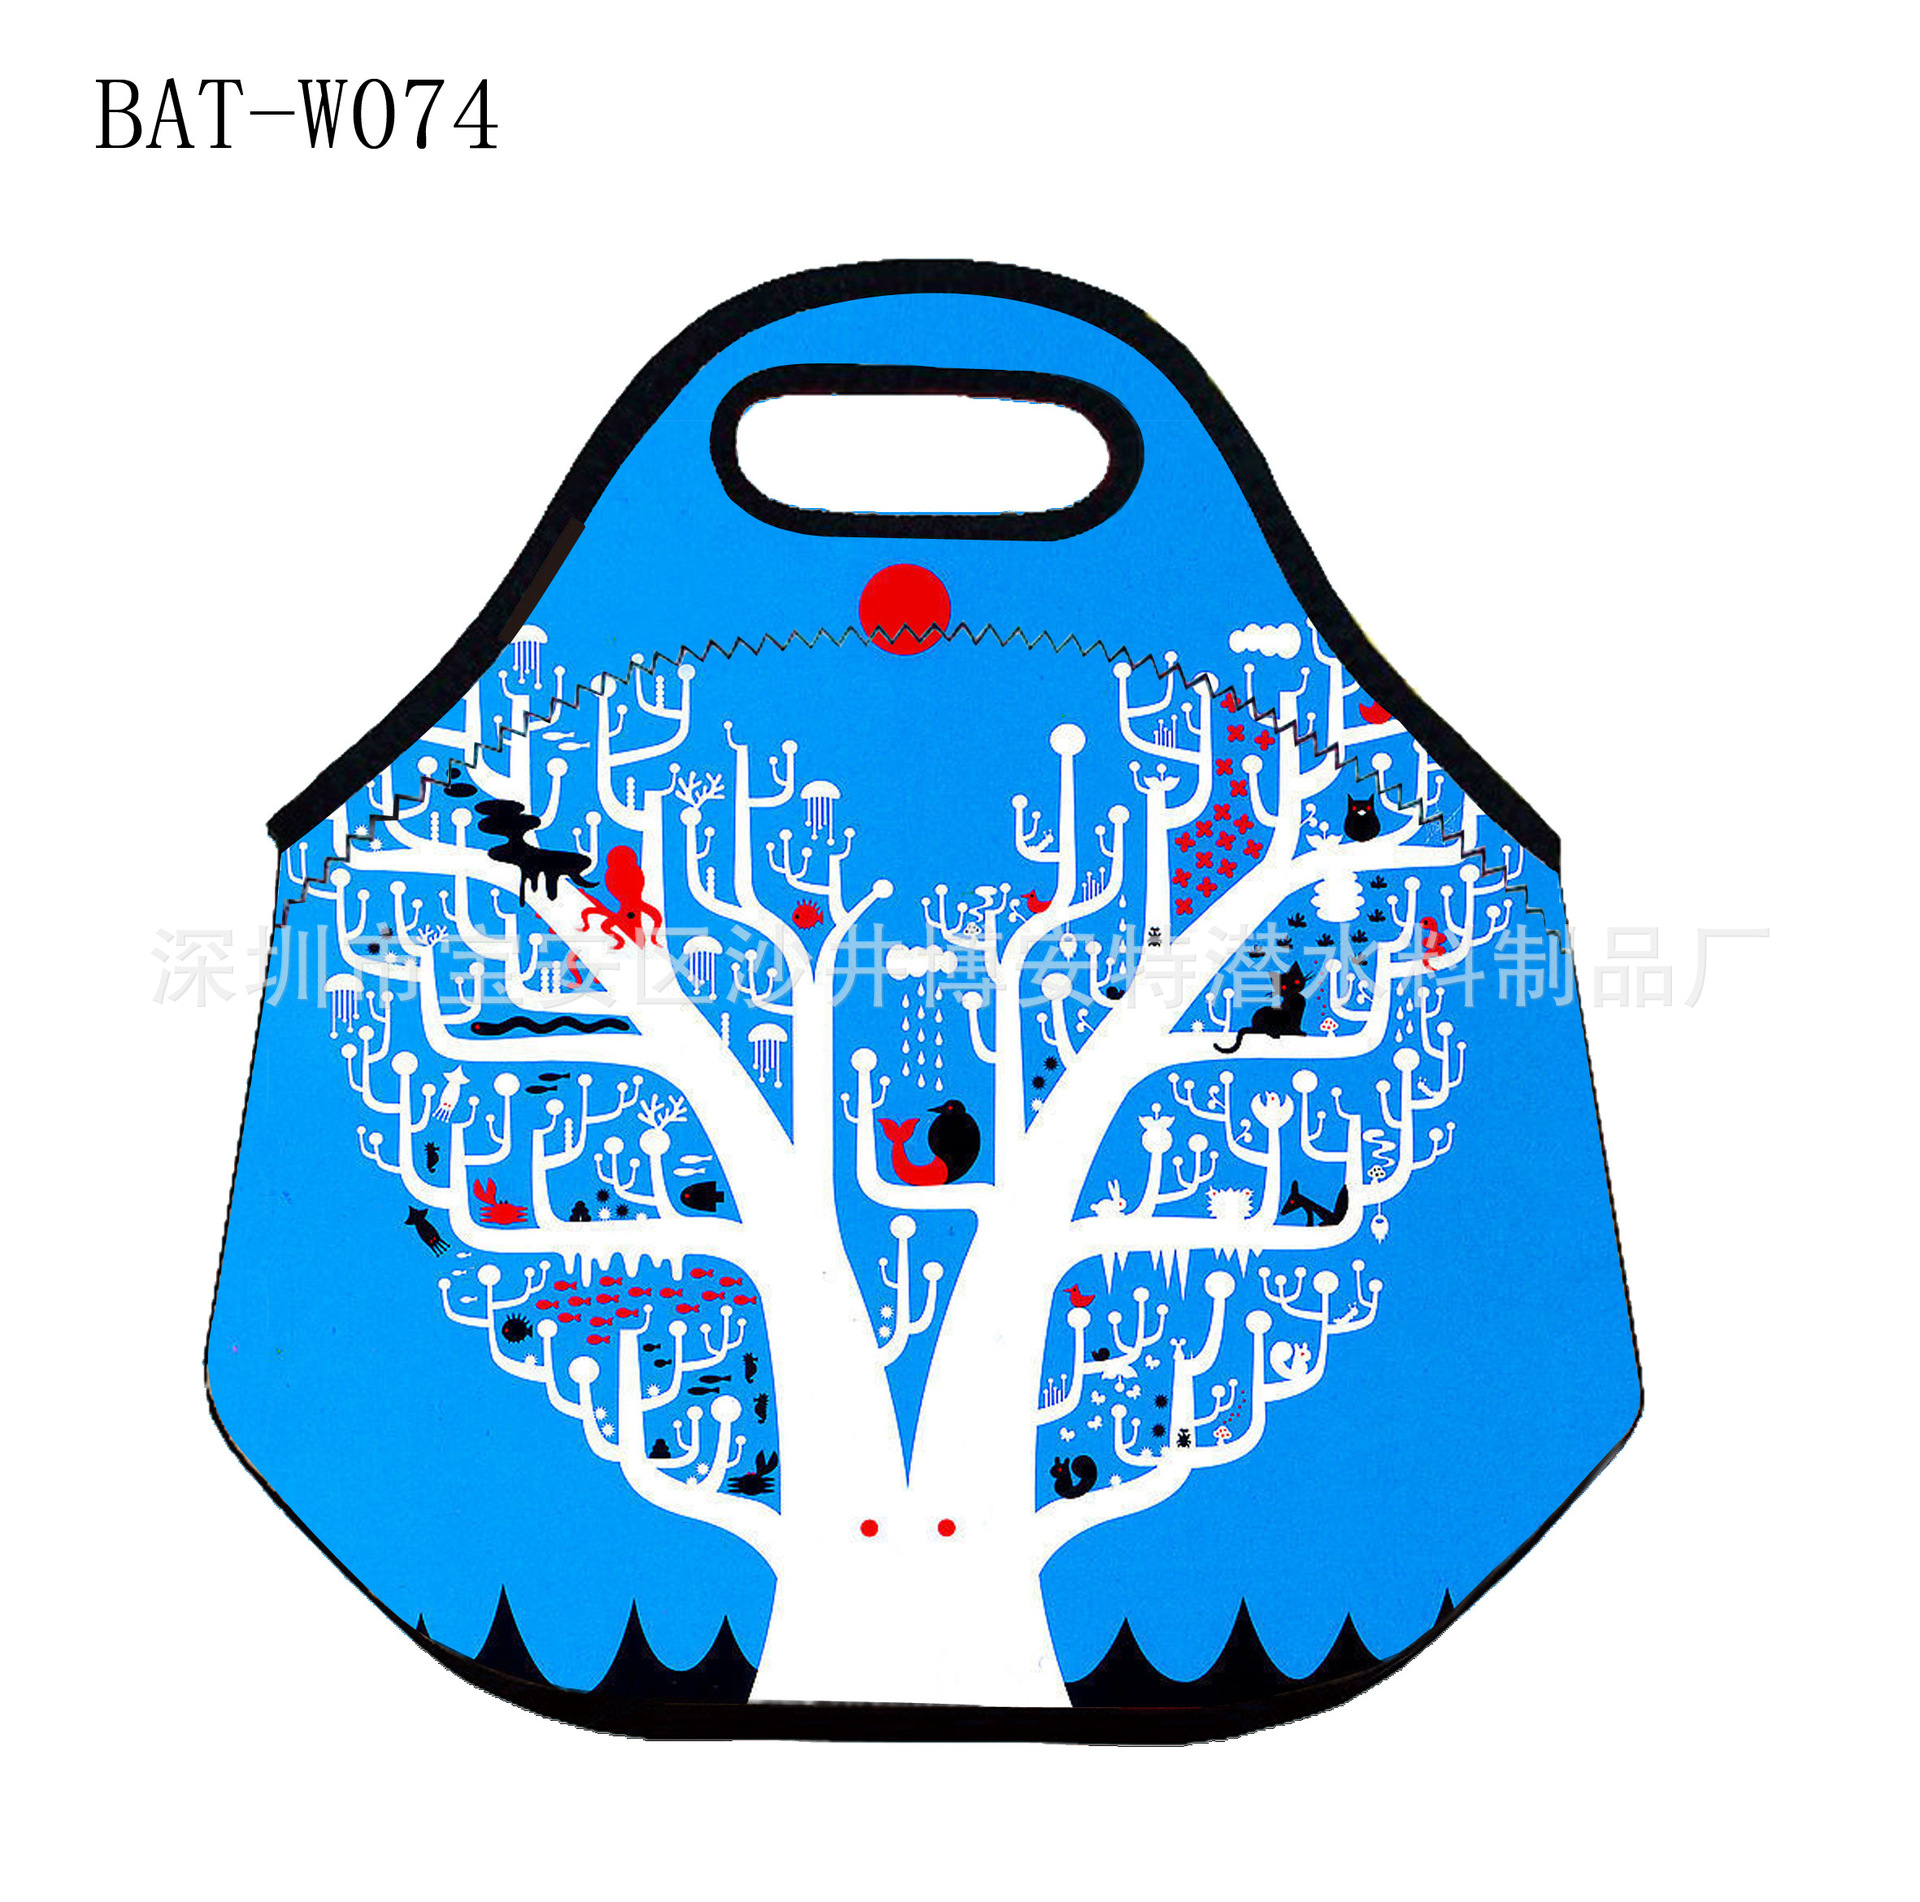 BAT-W074